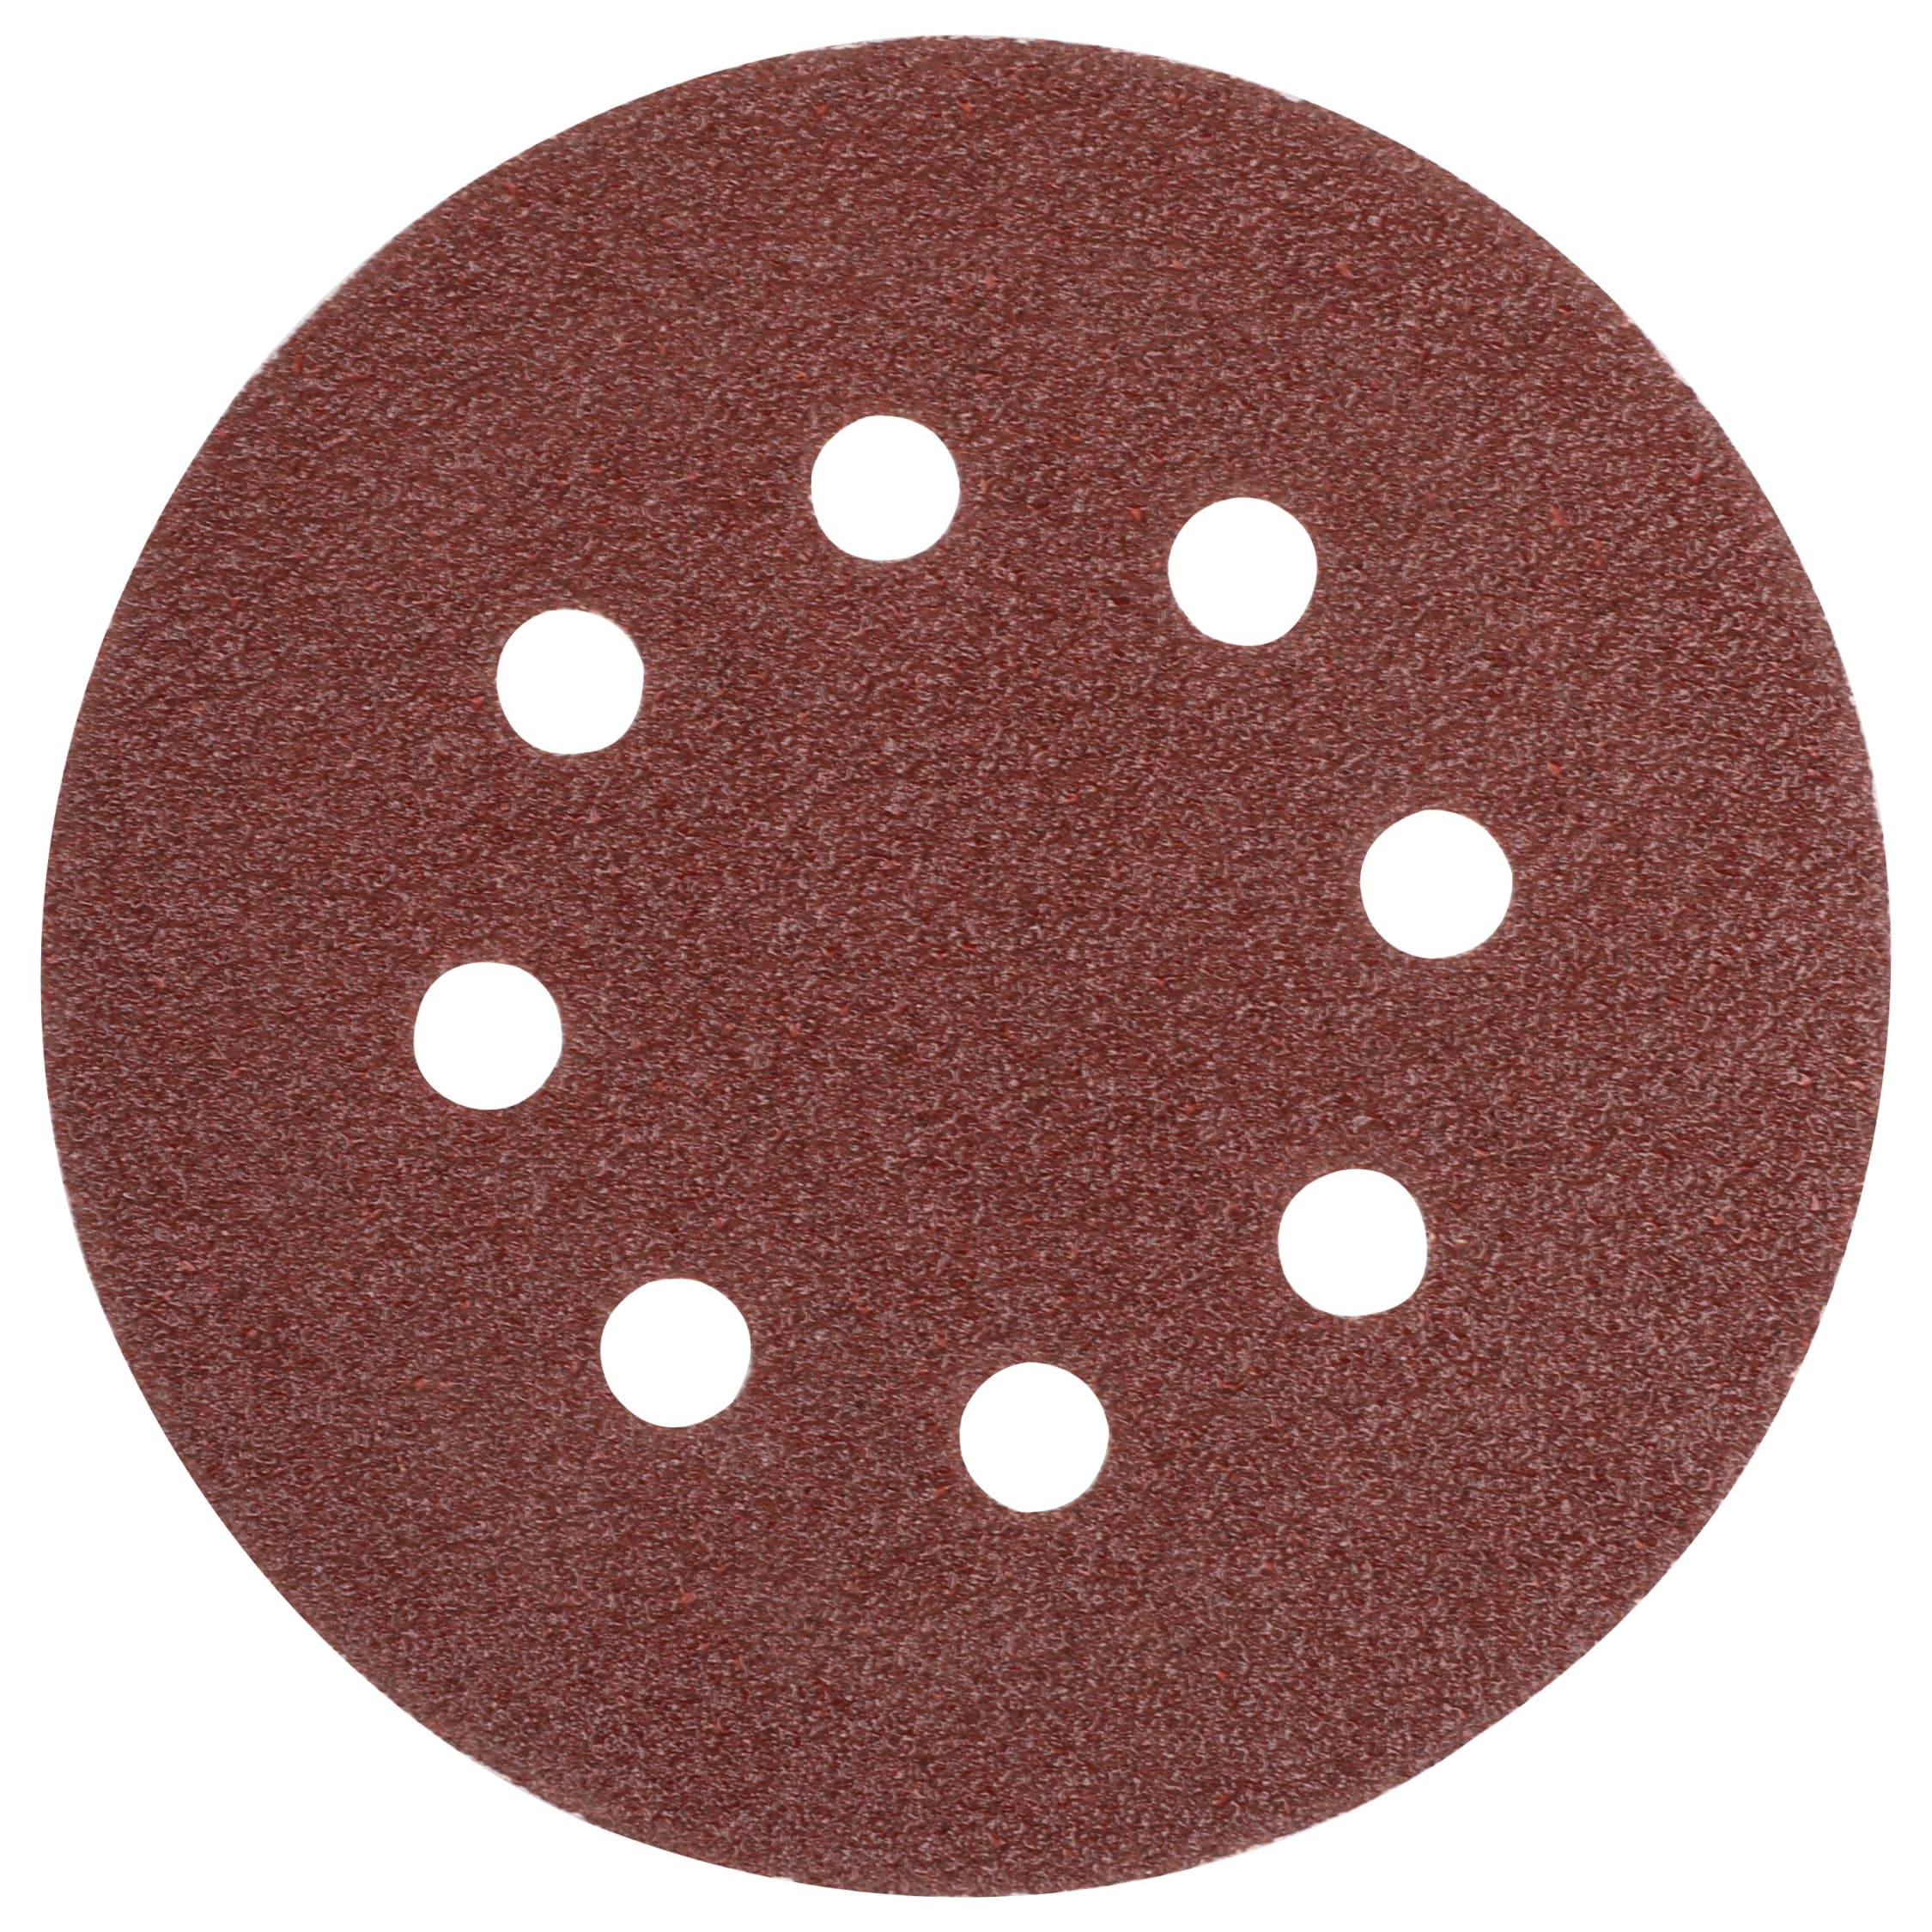 show original title Grain Details about   Discs Tear Eccentric Sanding Paper or Hole 125mm Div Mod 